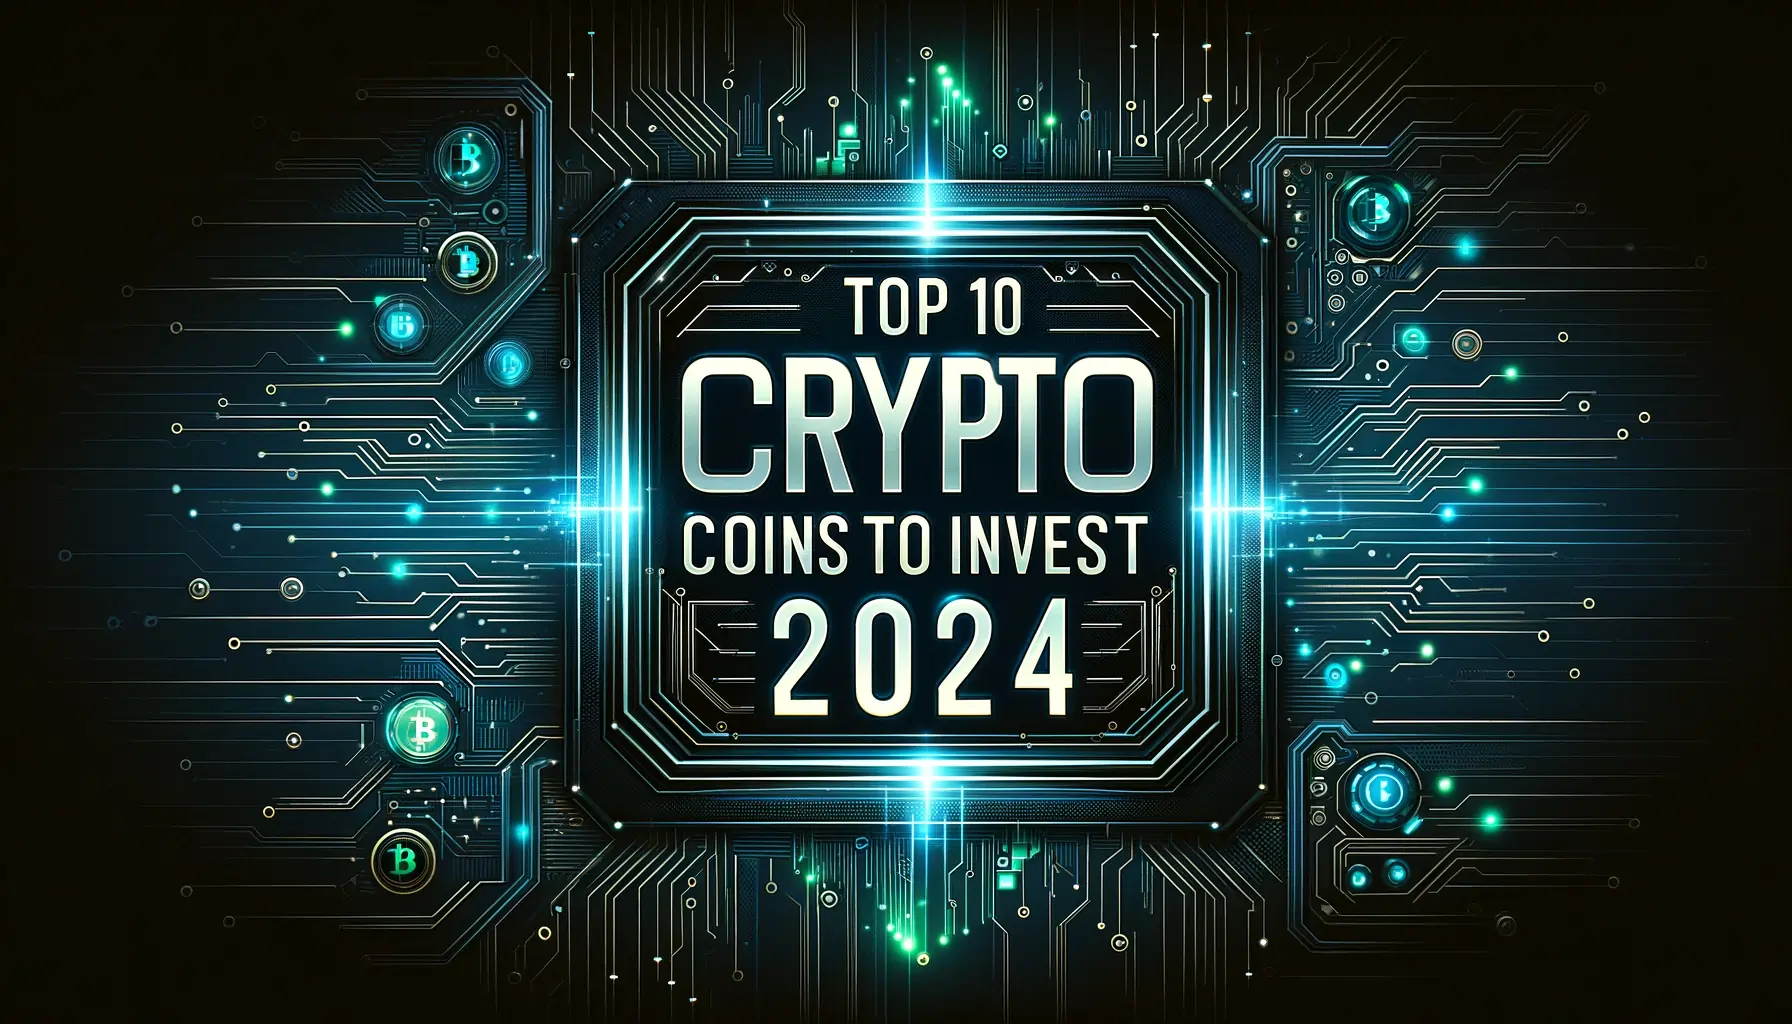 Top 10 Crypto Coins